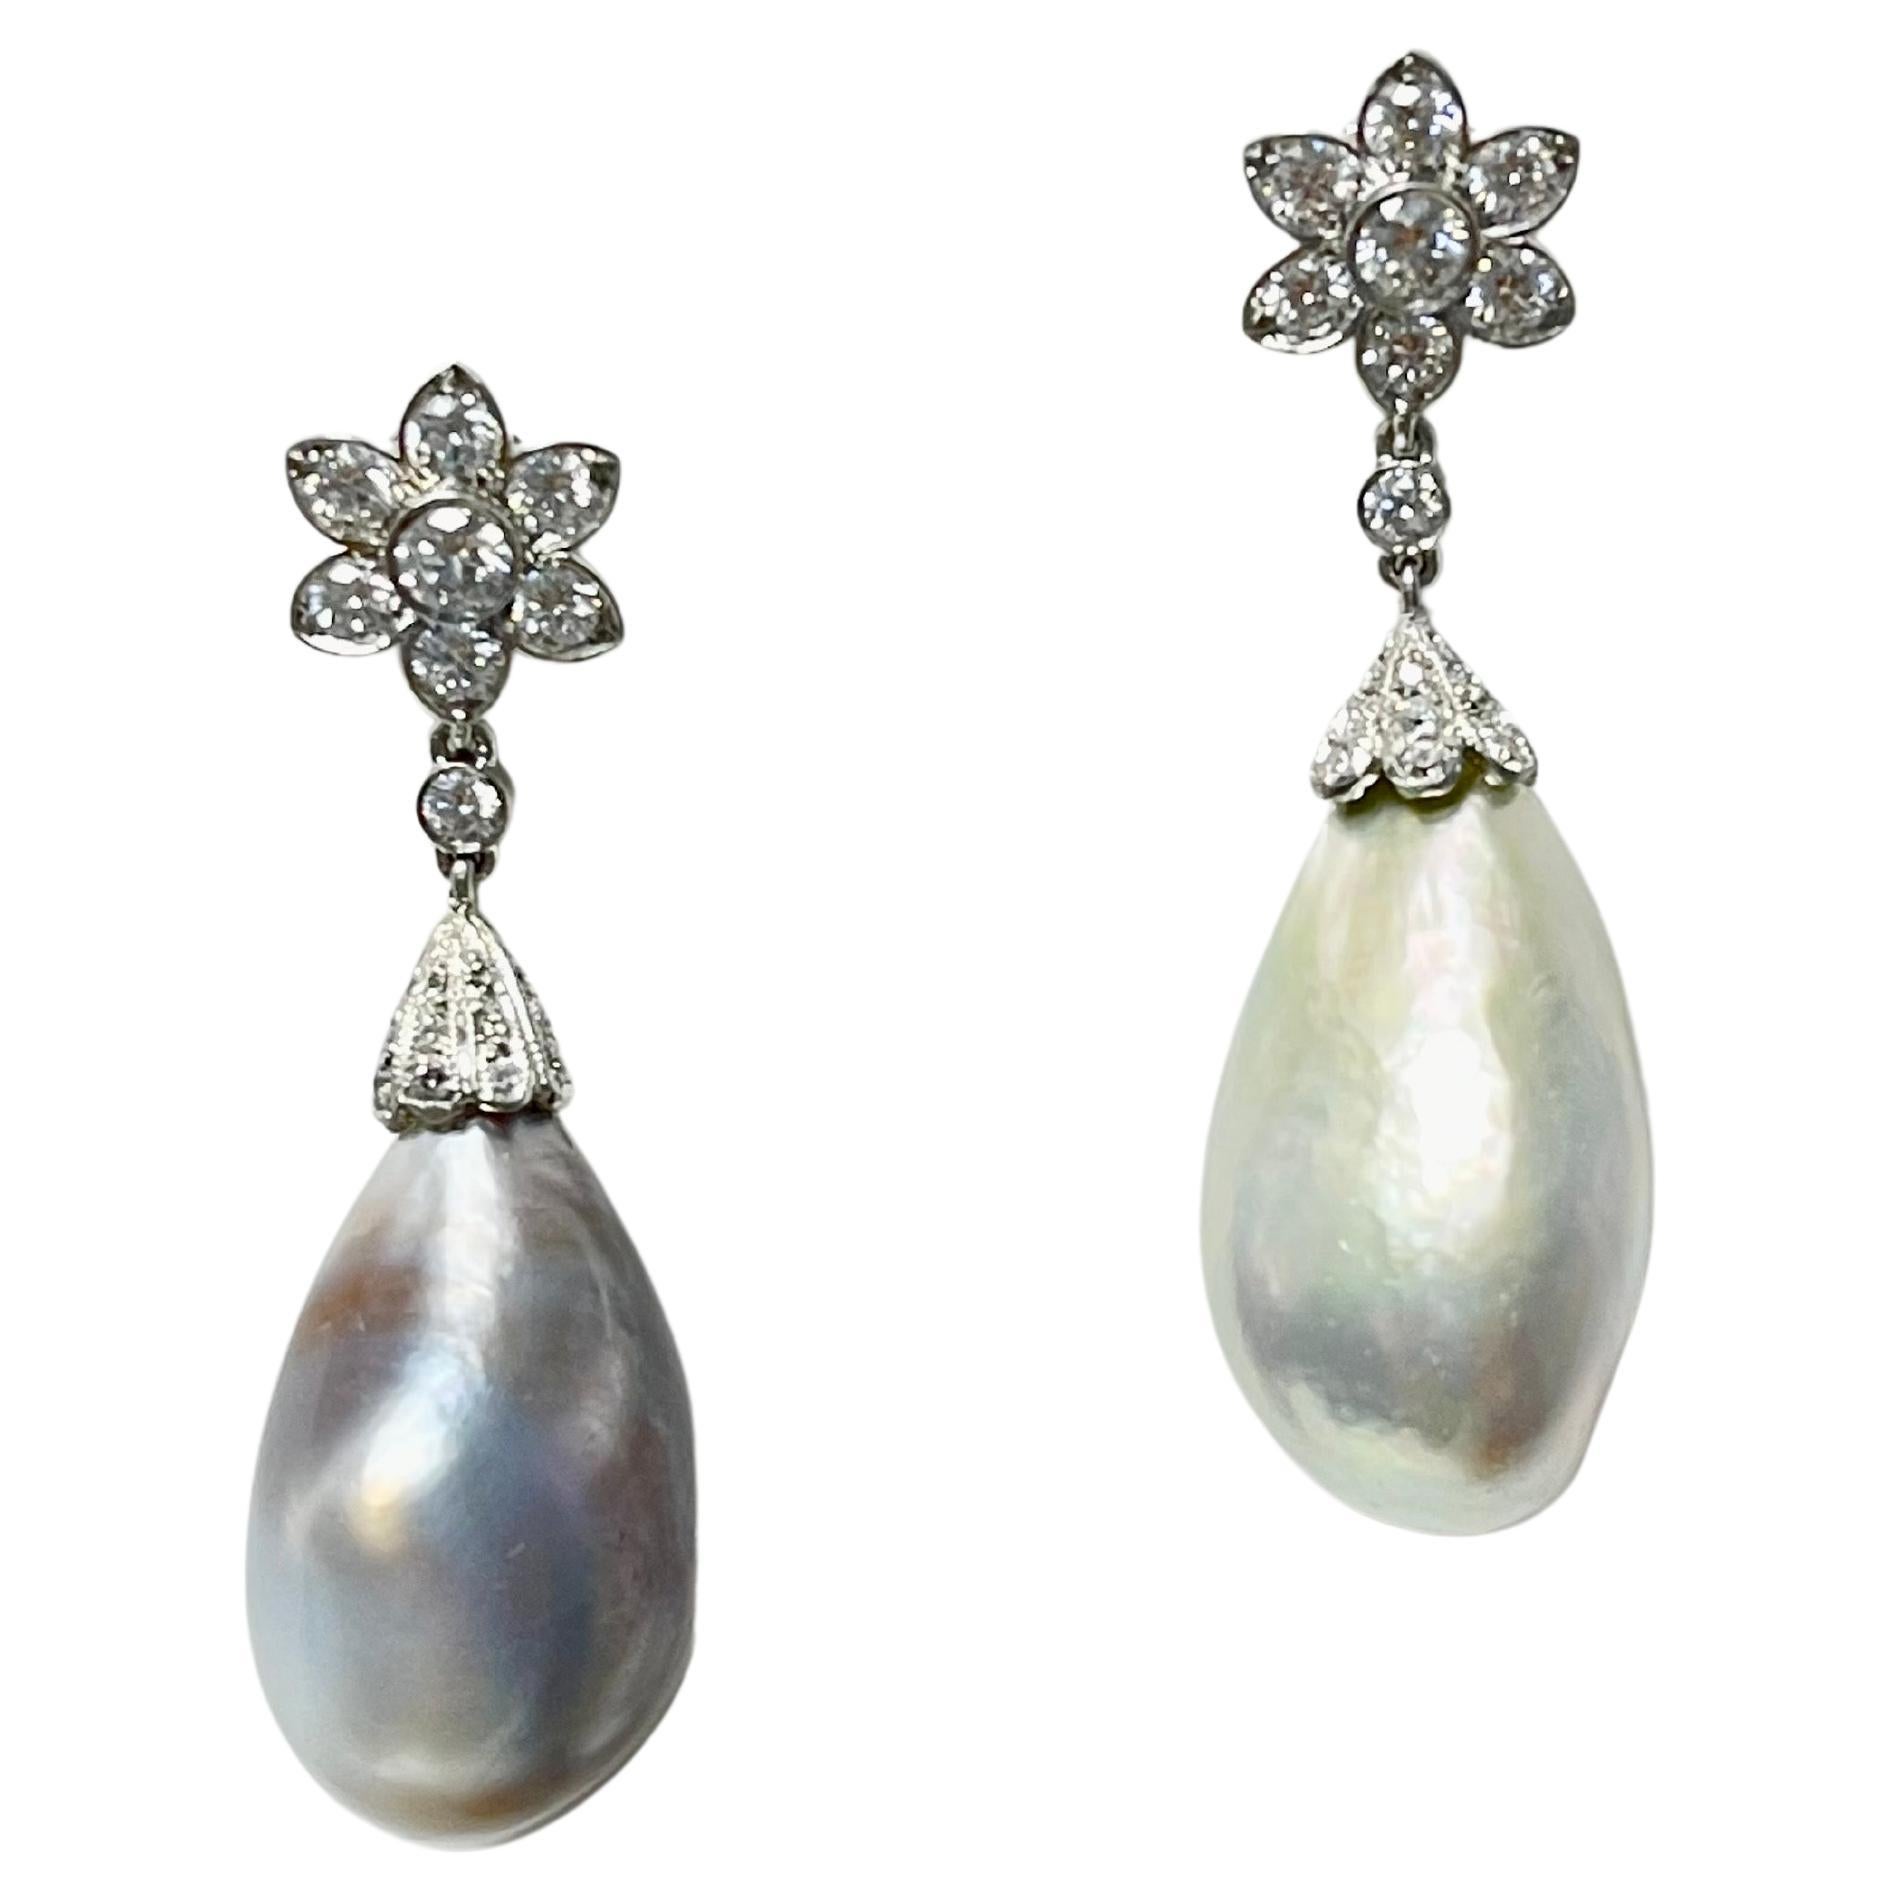 Boucles d'oreilles style Tiffany en perles naturelles certifiées ESSF et diamants, réalisées à la main en platine. 

Les détails sont les suivants : 
Perle blanche : 18.51 carats  (21 mm de long)
Perle grise : 18.32 carats ( 21mm de long ) 
Métal :